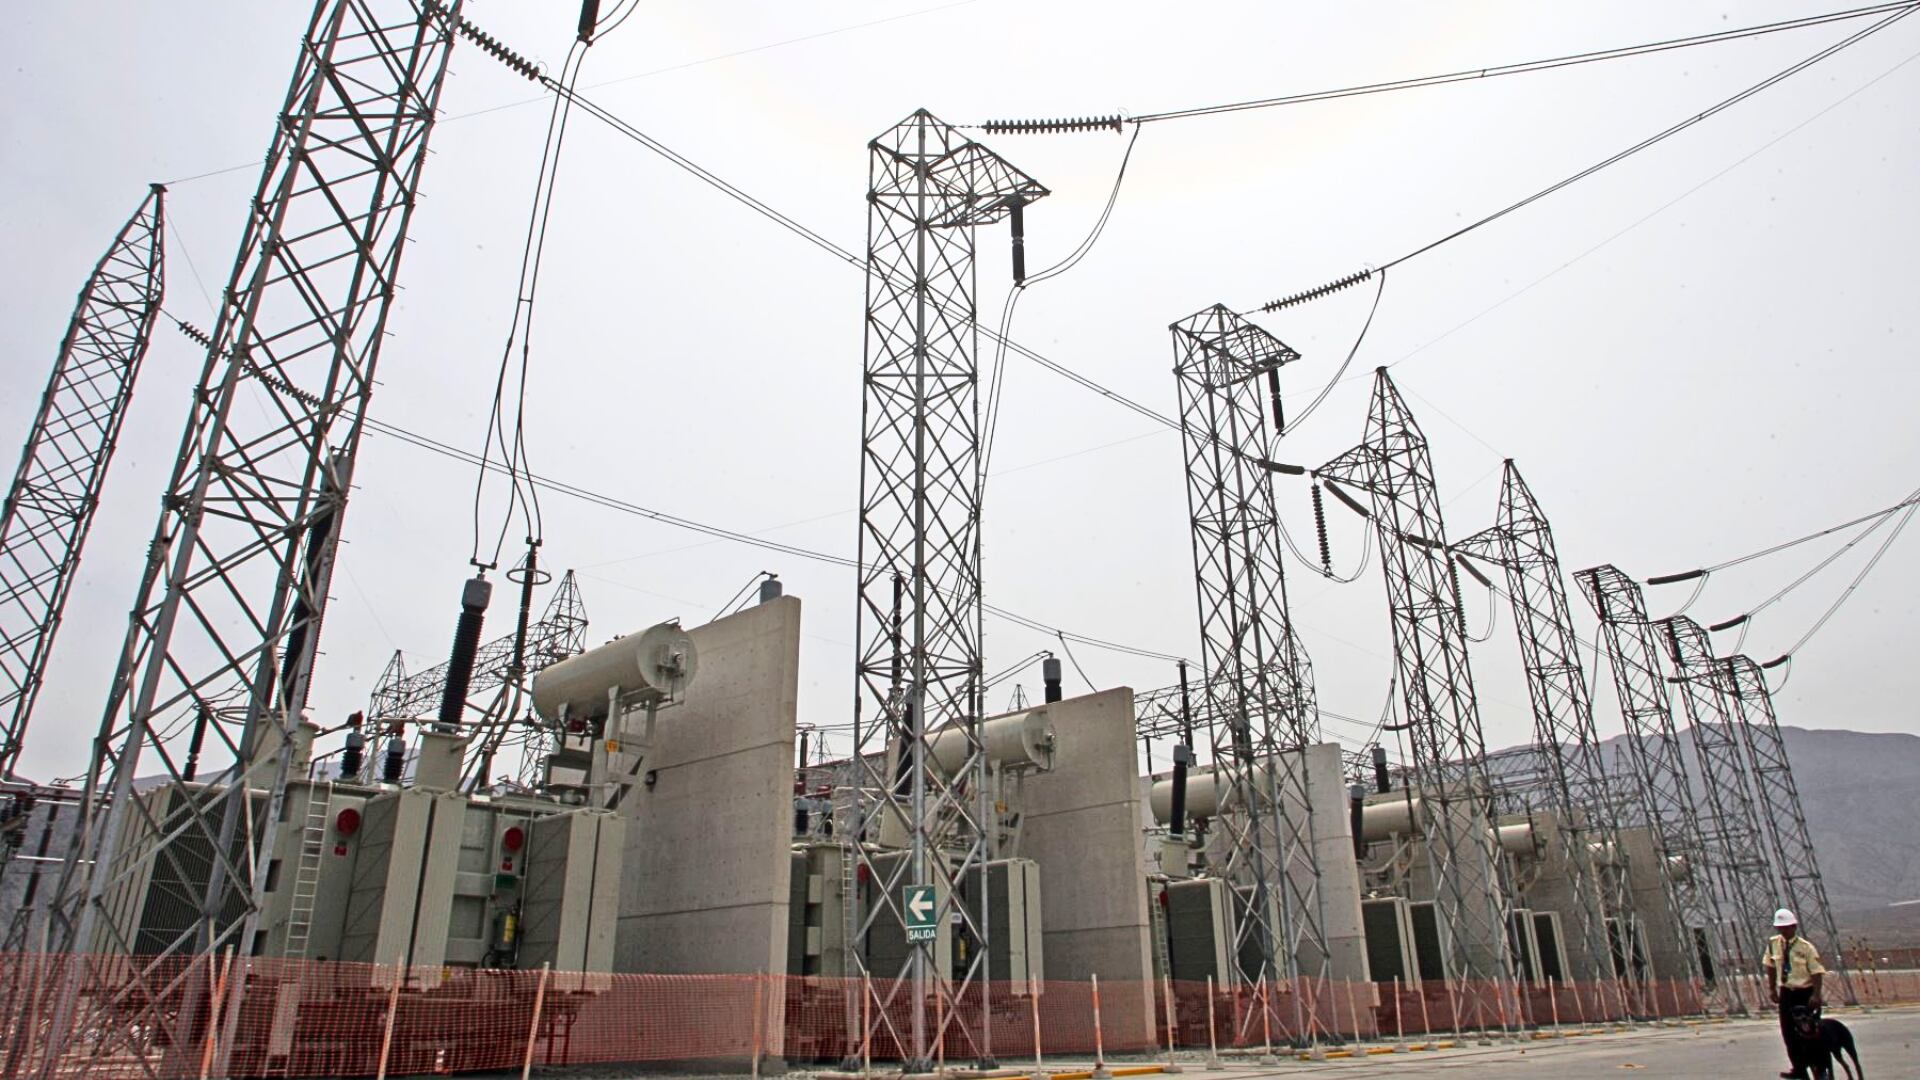 En la imagen se aprecia una subestación eléctrica con torres de alta tensión.